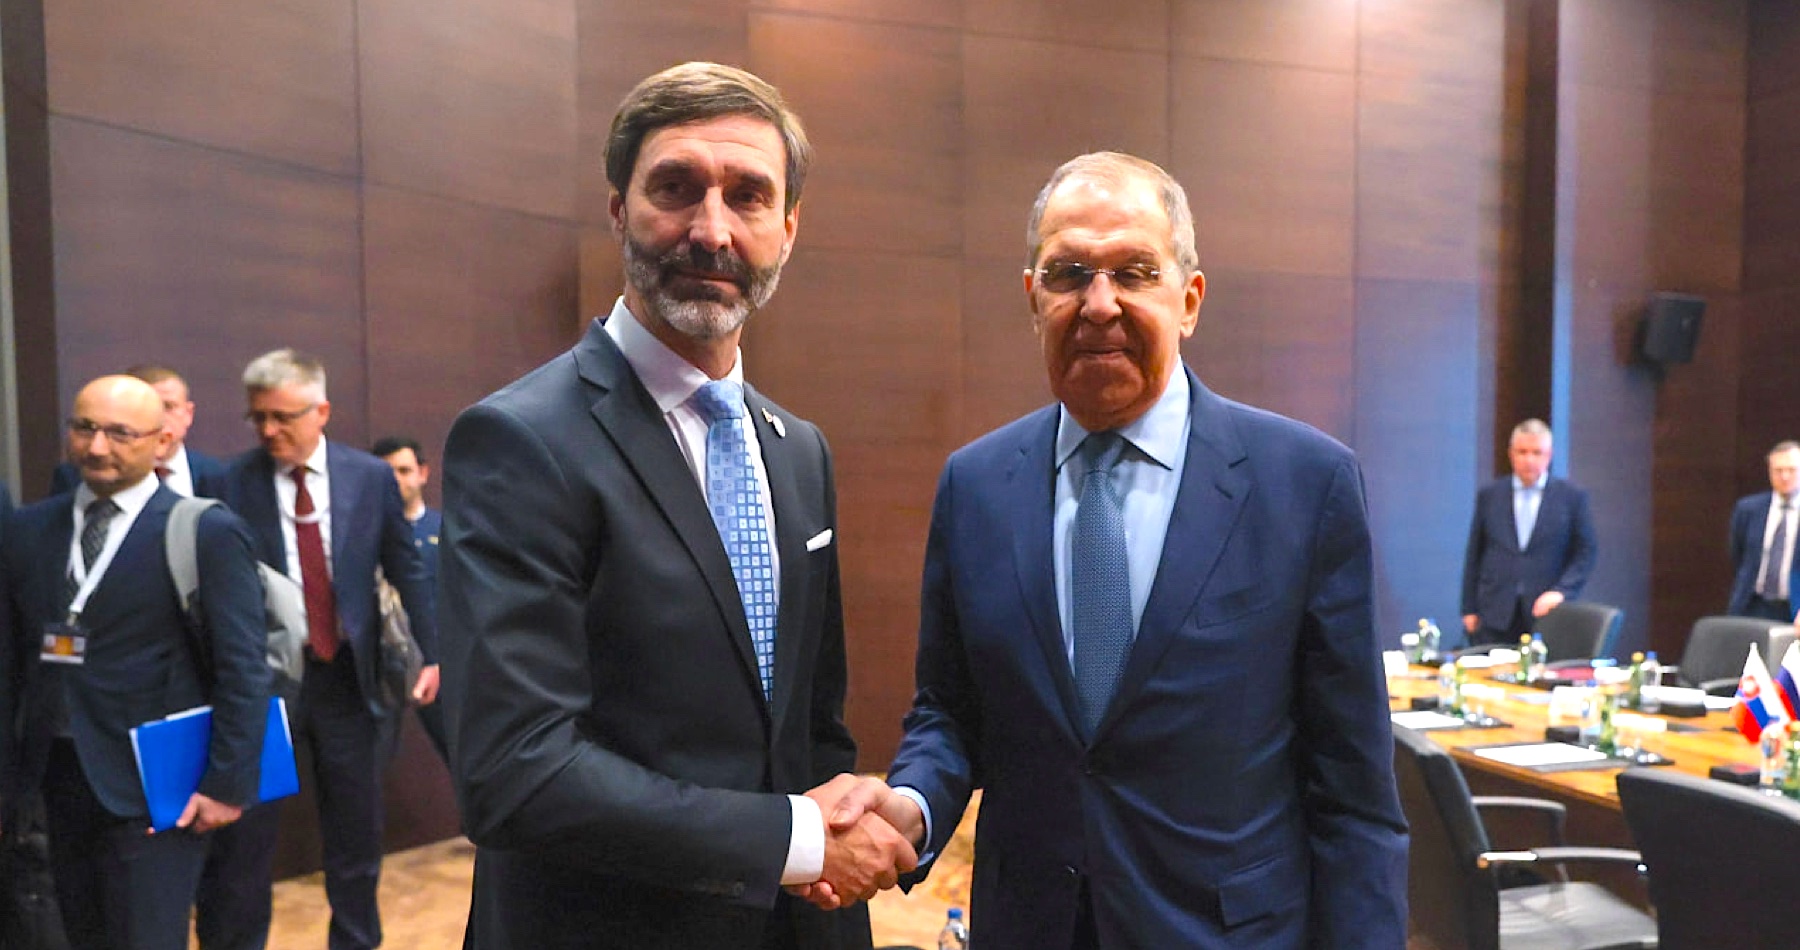 Minister zahraničia Blanár sa v tureckej Antalyi stretol so šéfom ruskej diplomacie Lavrovom: „Povedal som mu, že rusko-ukrajinský konflikt nemá vojenské riešenie